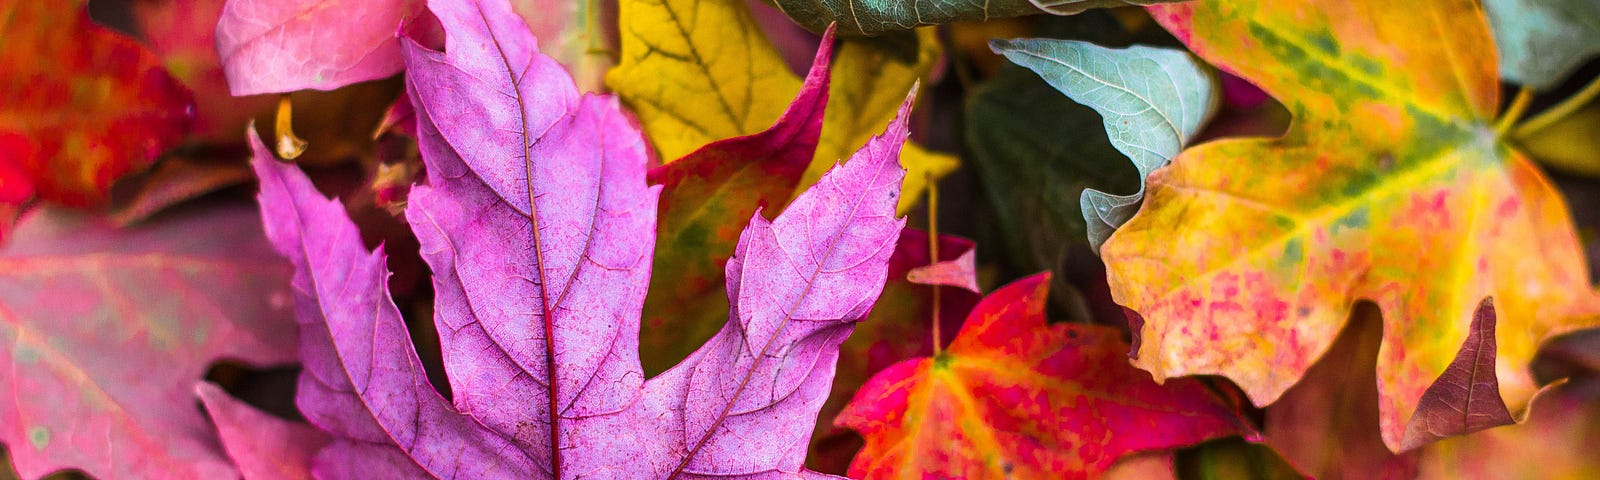 Atypical fall leaf